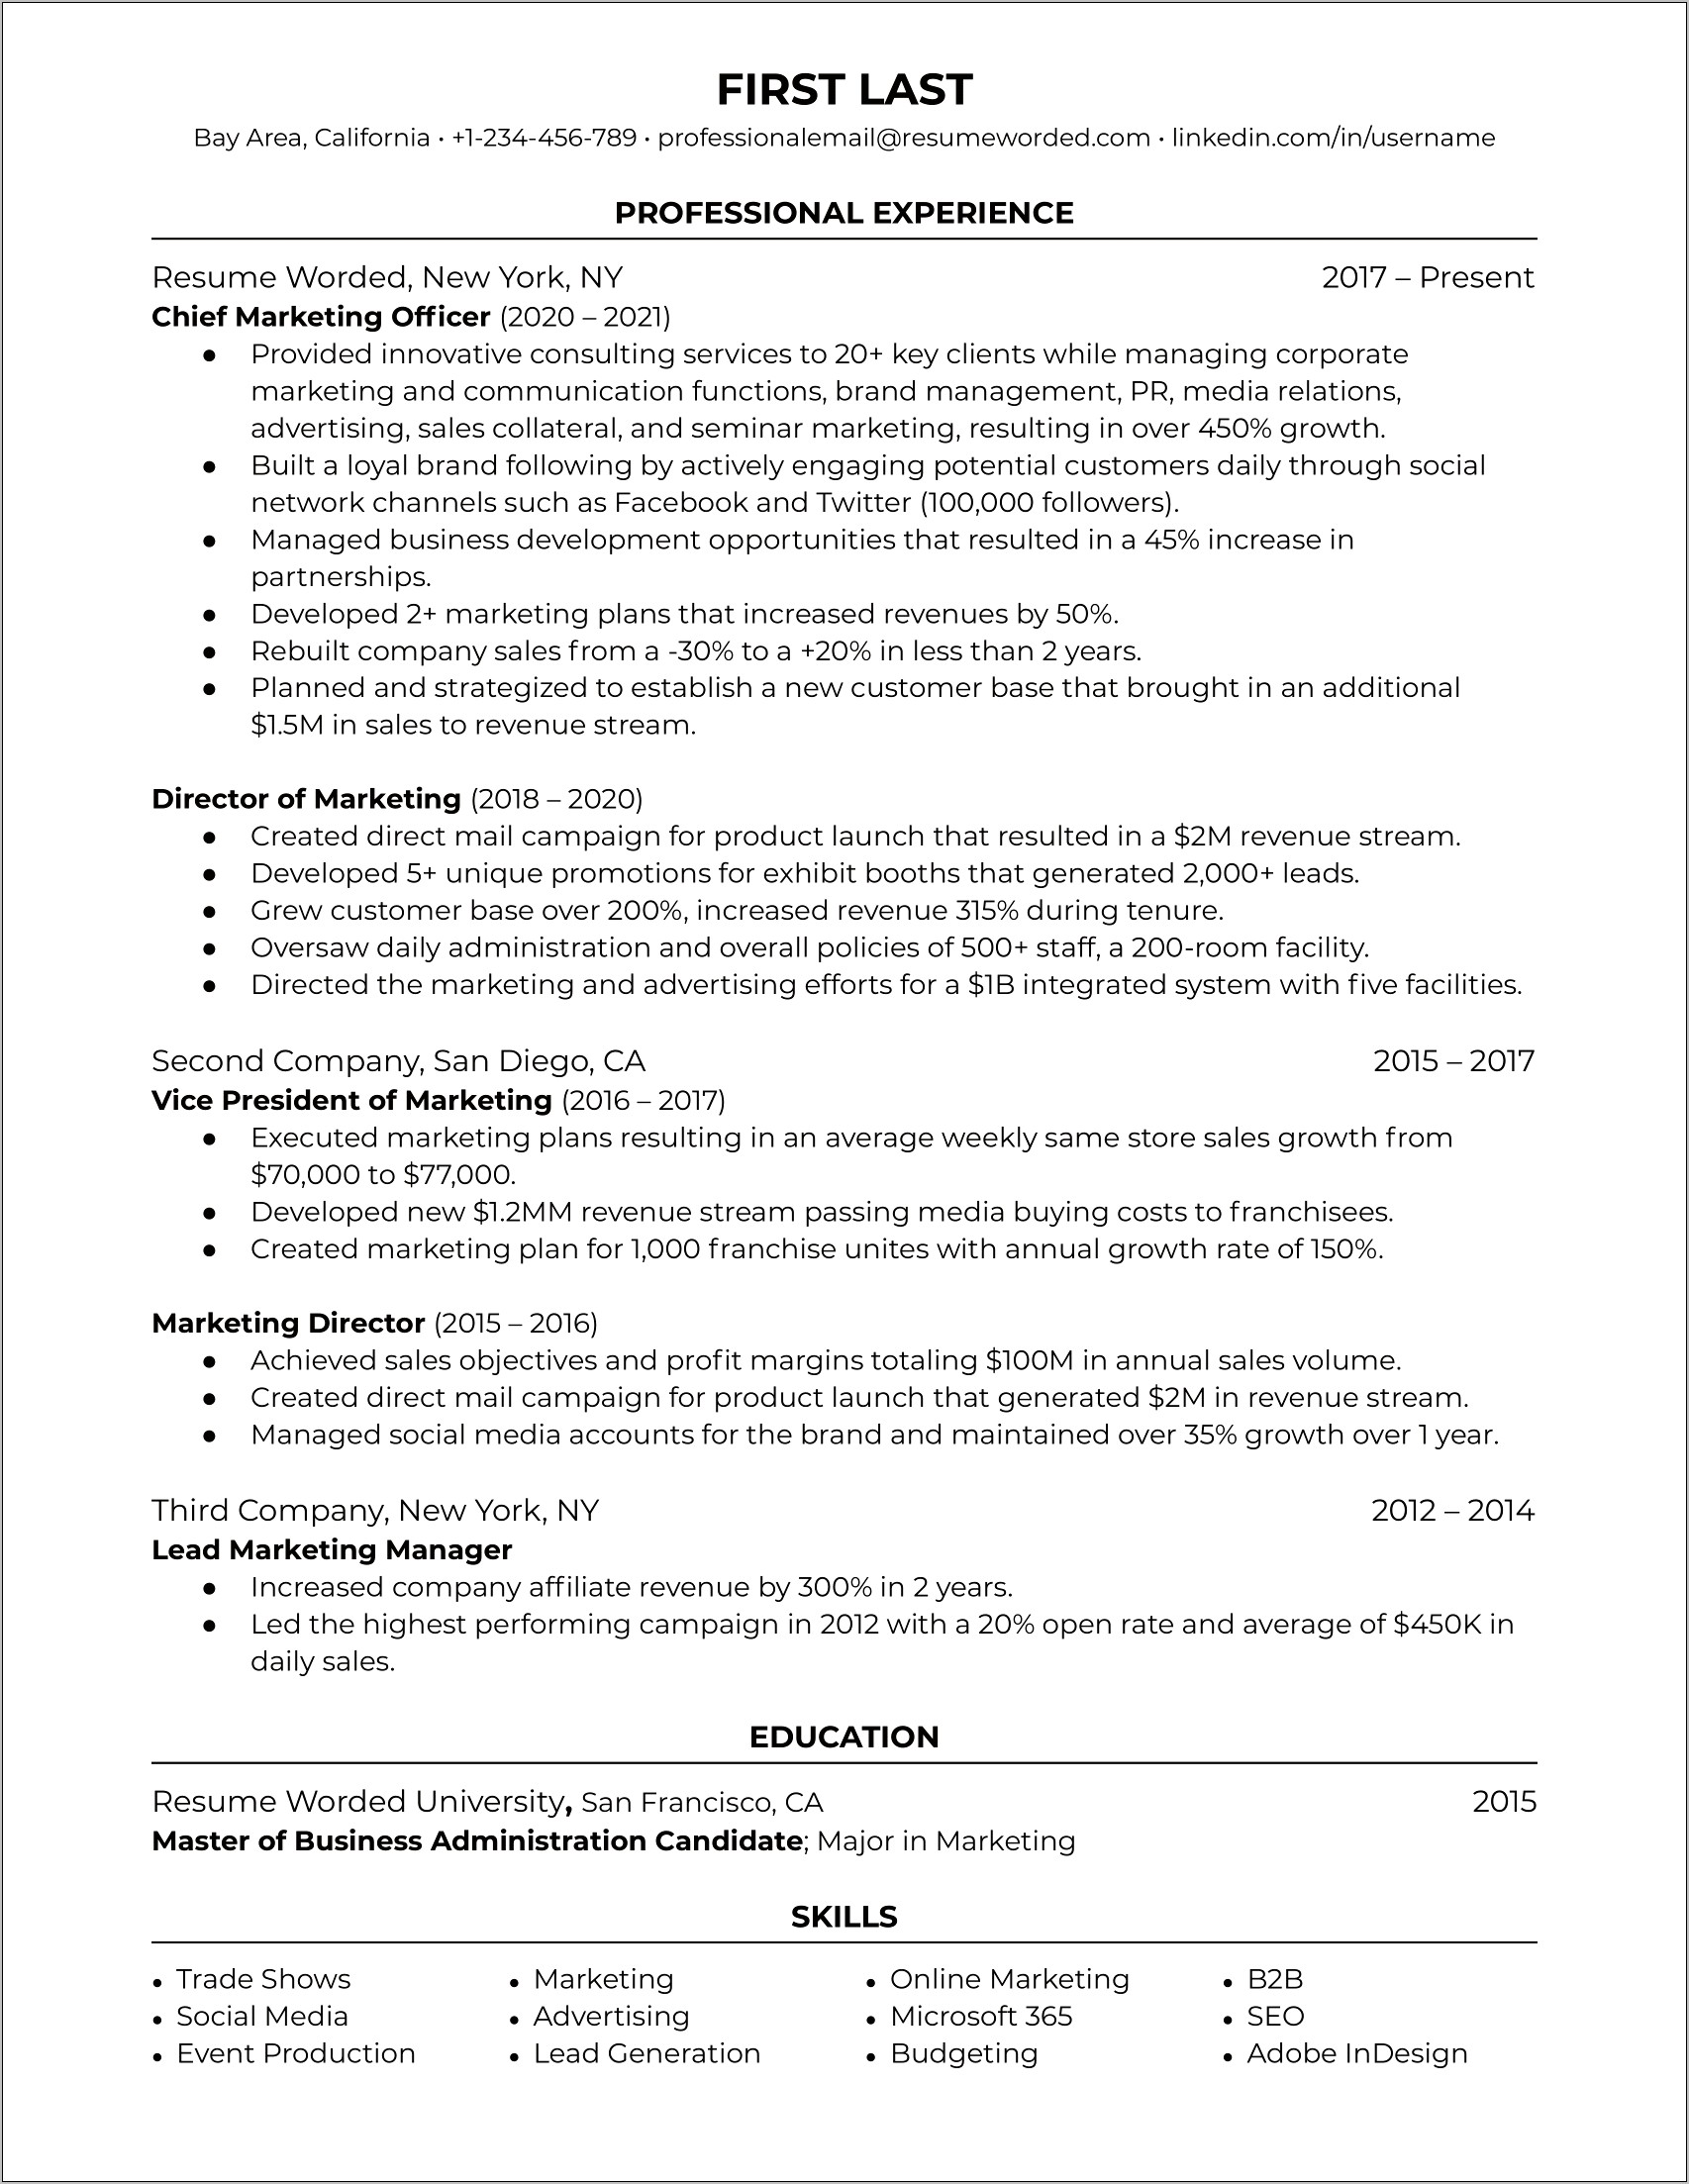 Chief Marketing Officer Job Description Resume